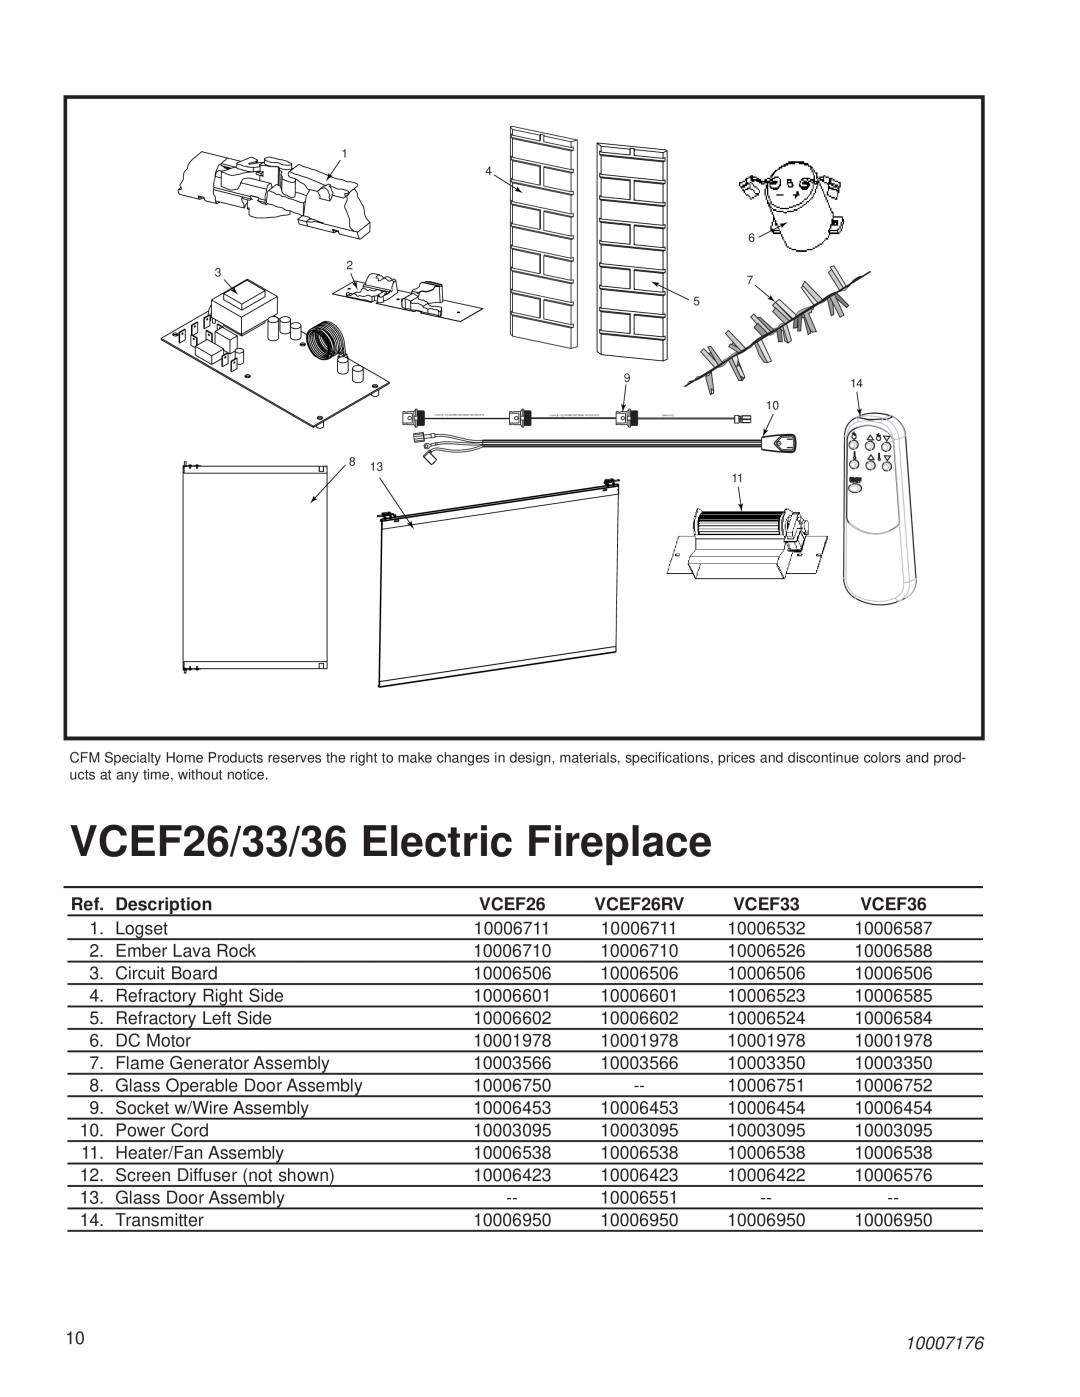 Vermont Casting VCEF26/33/36 Electric Fireplace, Description, VCEF26RV, VCEF33, VCEF36, 10007176 